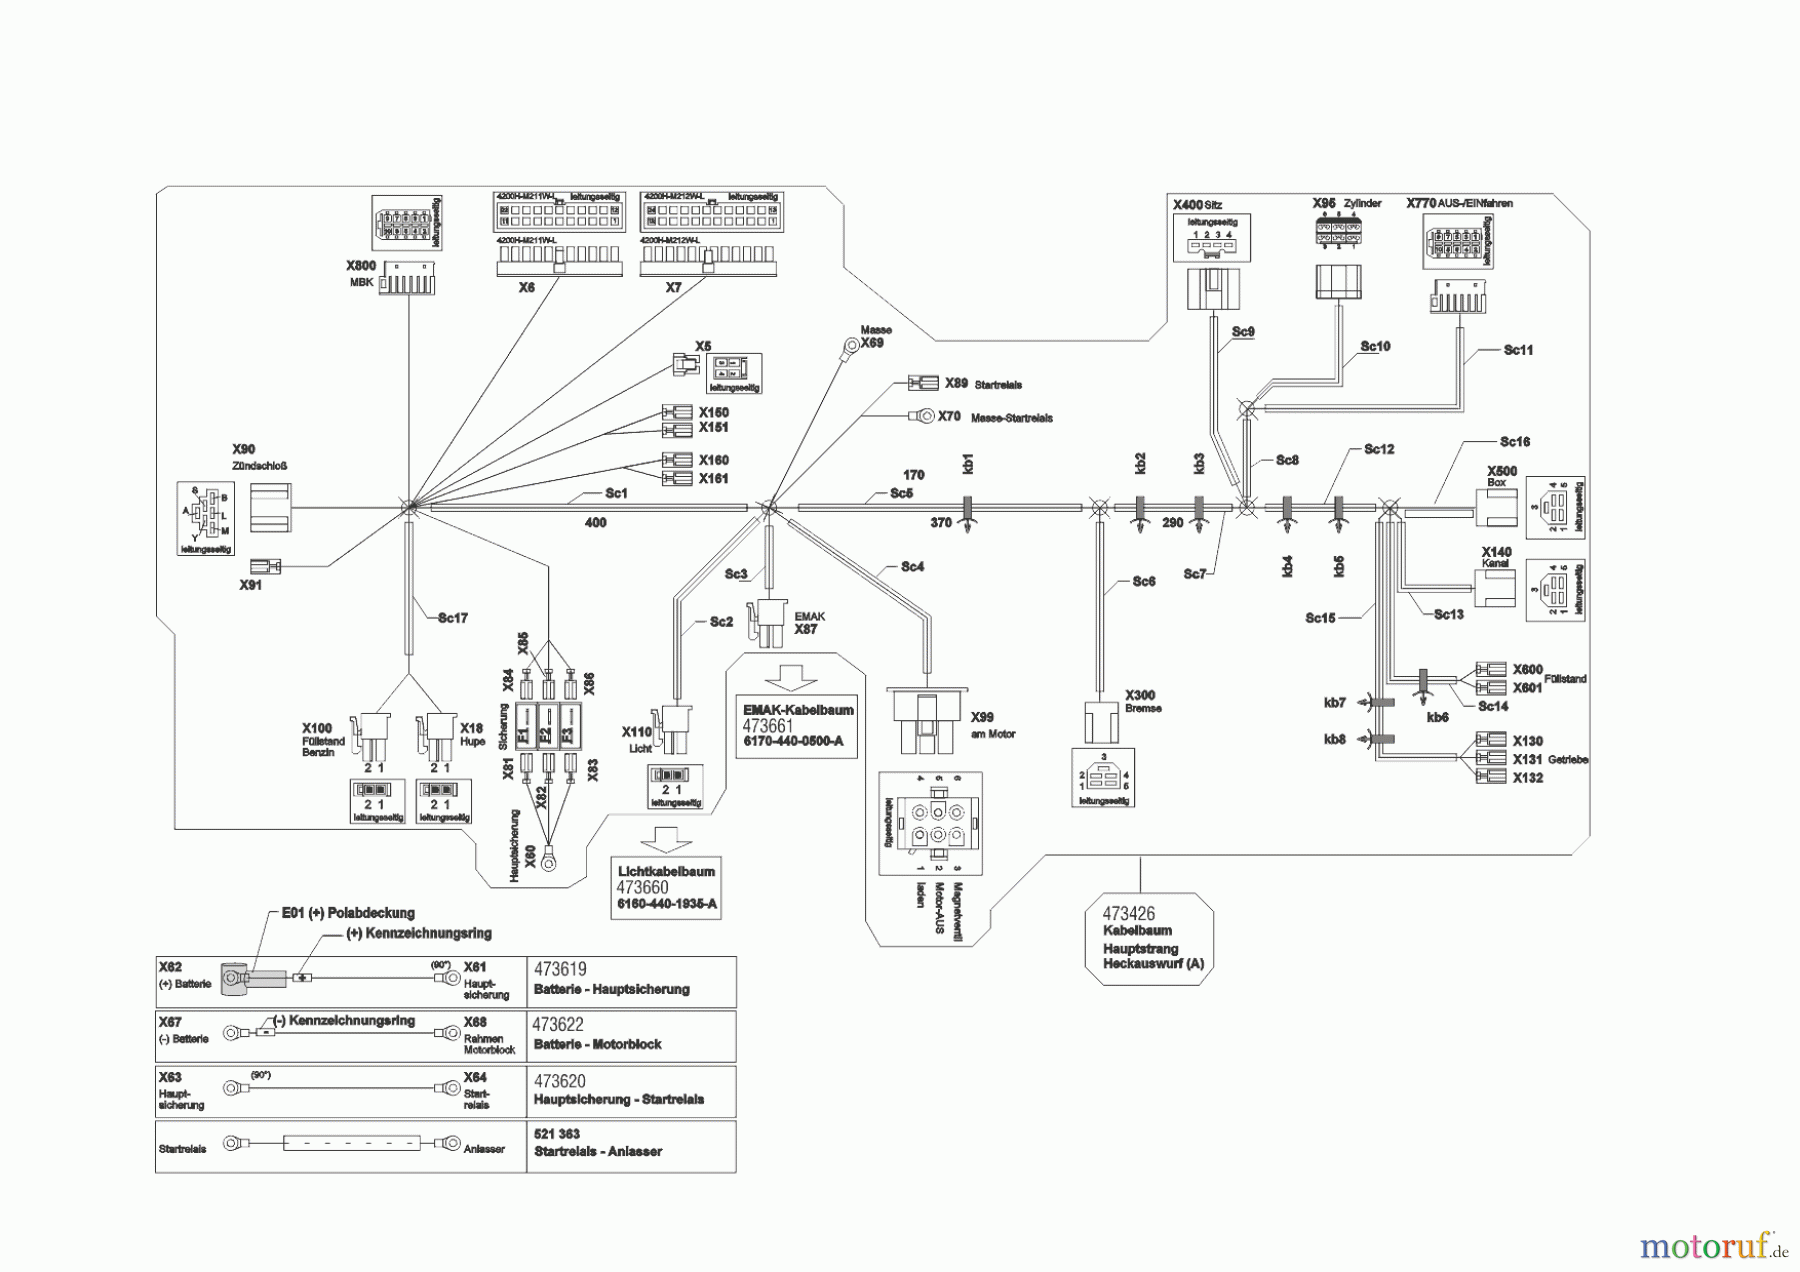  Powerline Gartentechnik Rasentraktor T20-105.4 HDE V2  ab 09/2016 Seite 10